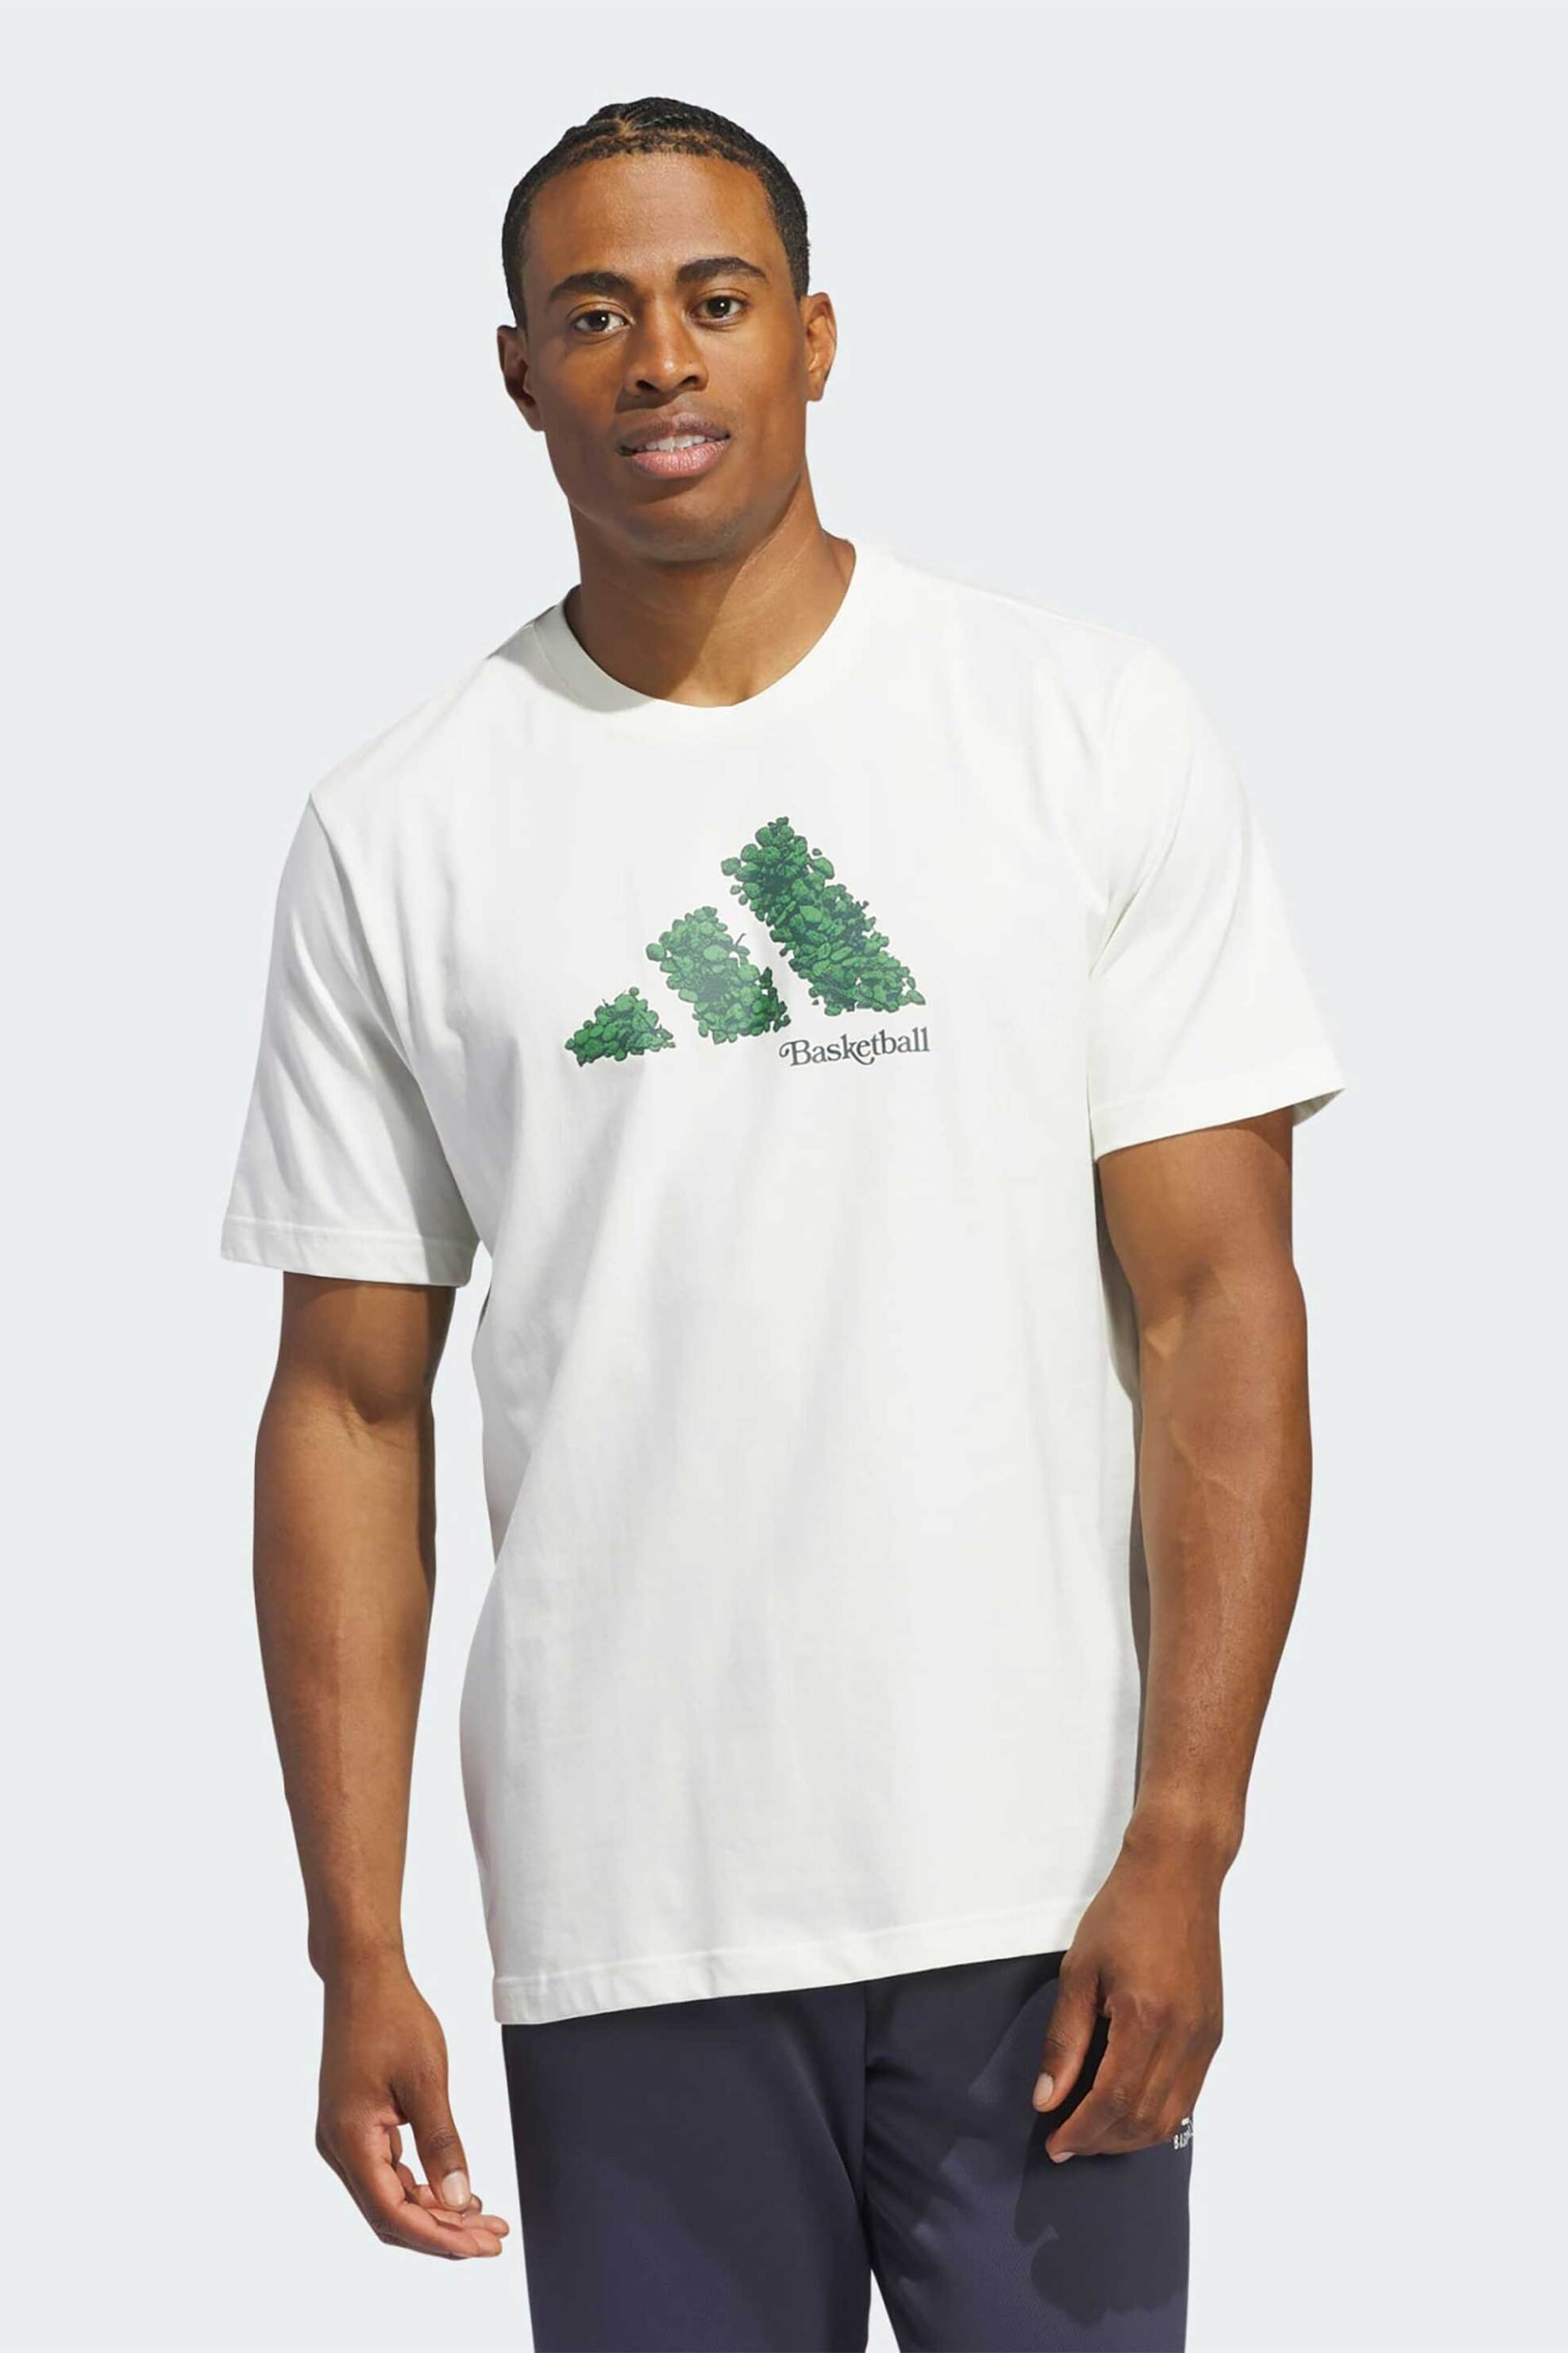 Ανδρική Μόδα > Ανδρικά Αθλητικά > Ανδρικά Αθλητικά Ρούχα > Αθλητικές Μπλούζες > Ανδρικά Αθλητικά T-Shirts Adidas ανδρικό T-shirt με graphic print Regular Fit "Court Therapy" - IN6366 Λευκό